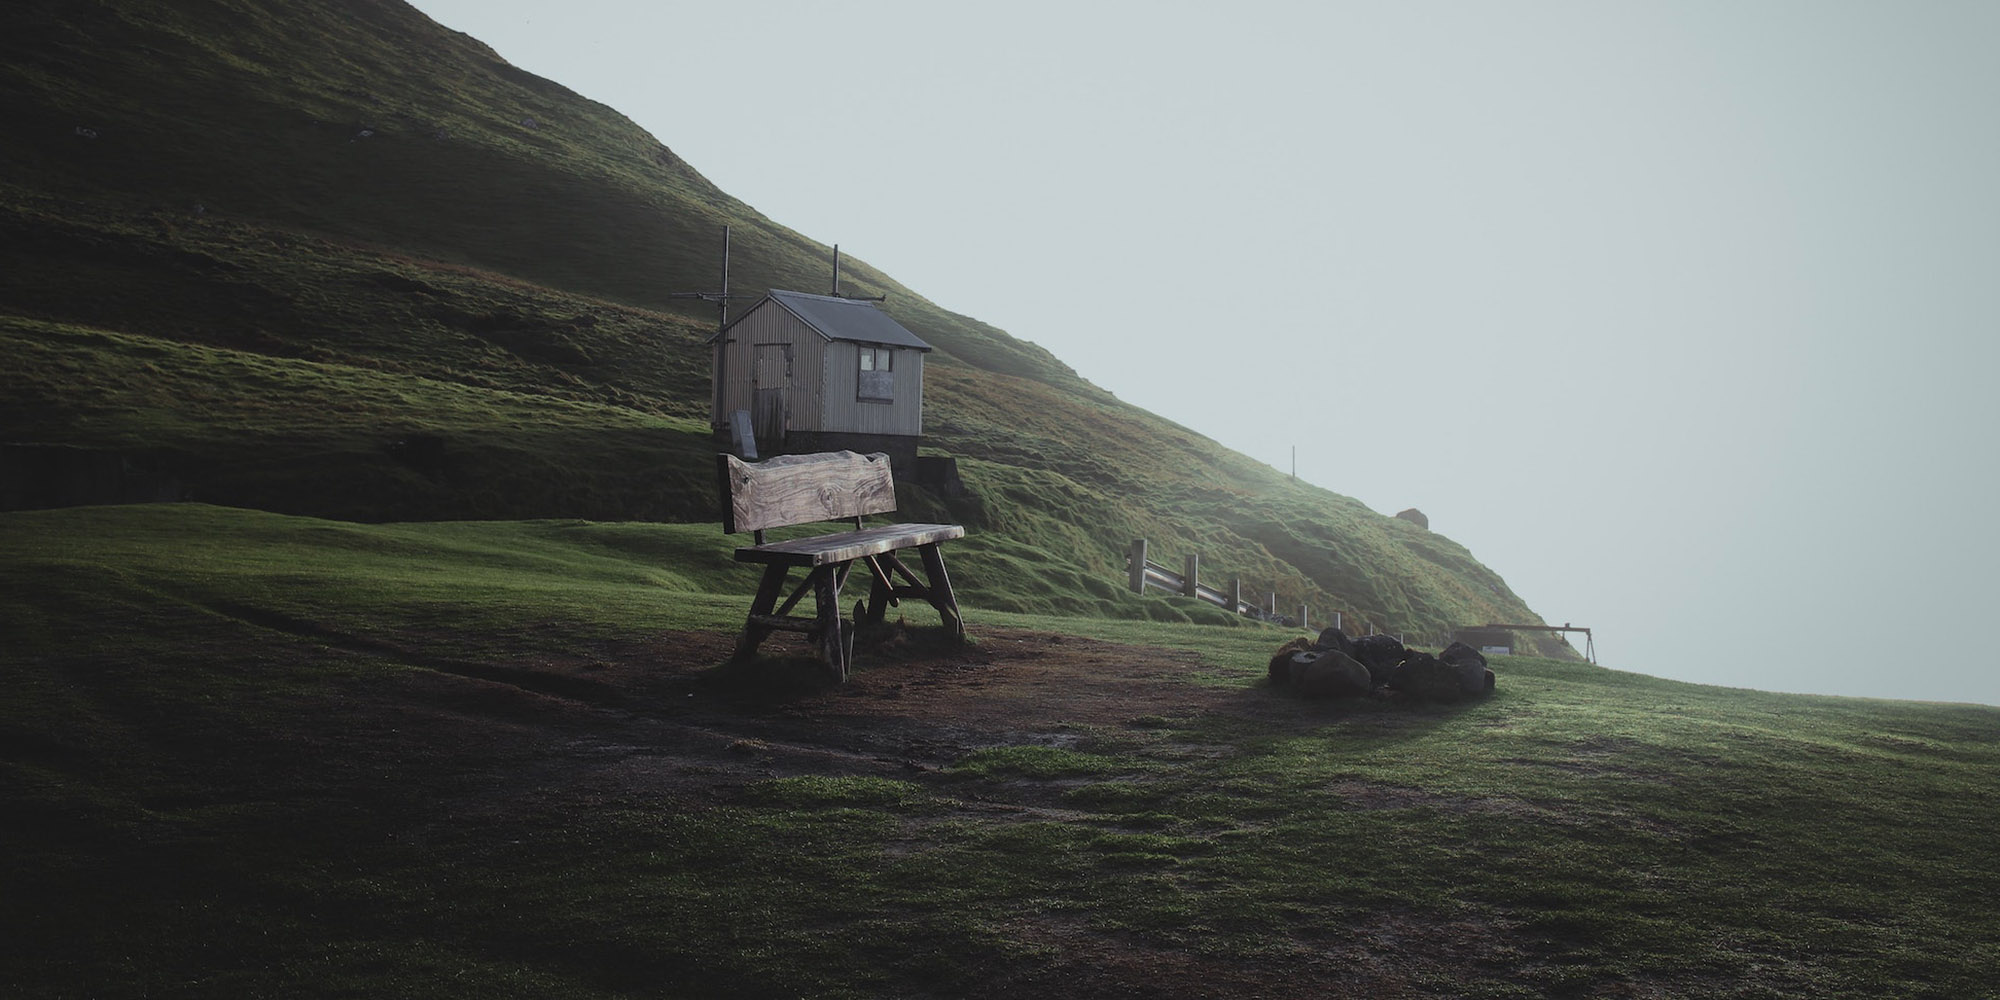 Leynar Faroe Islands: